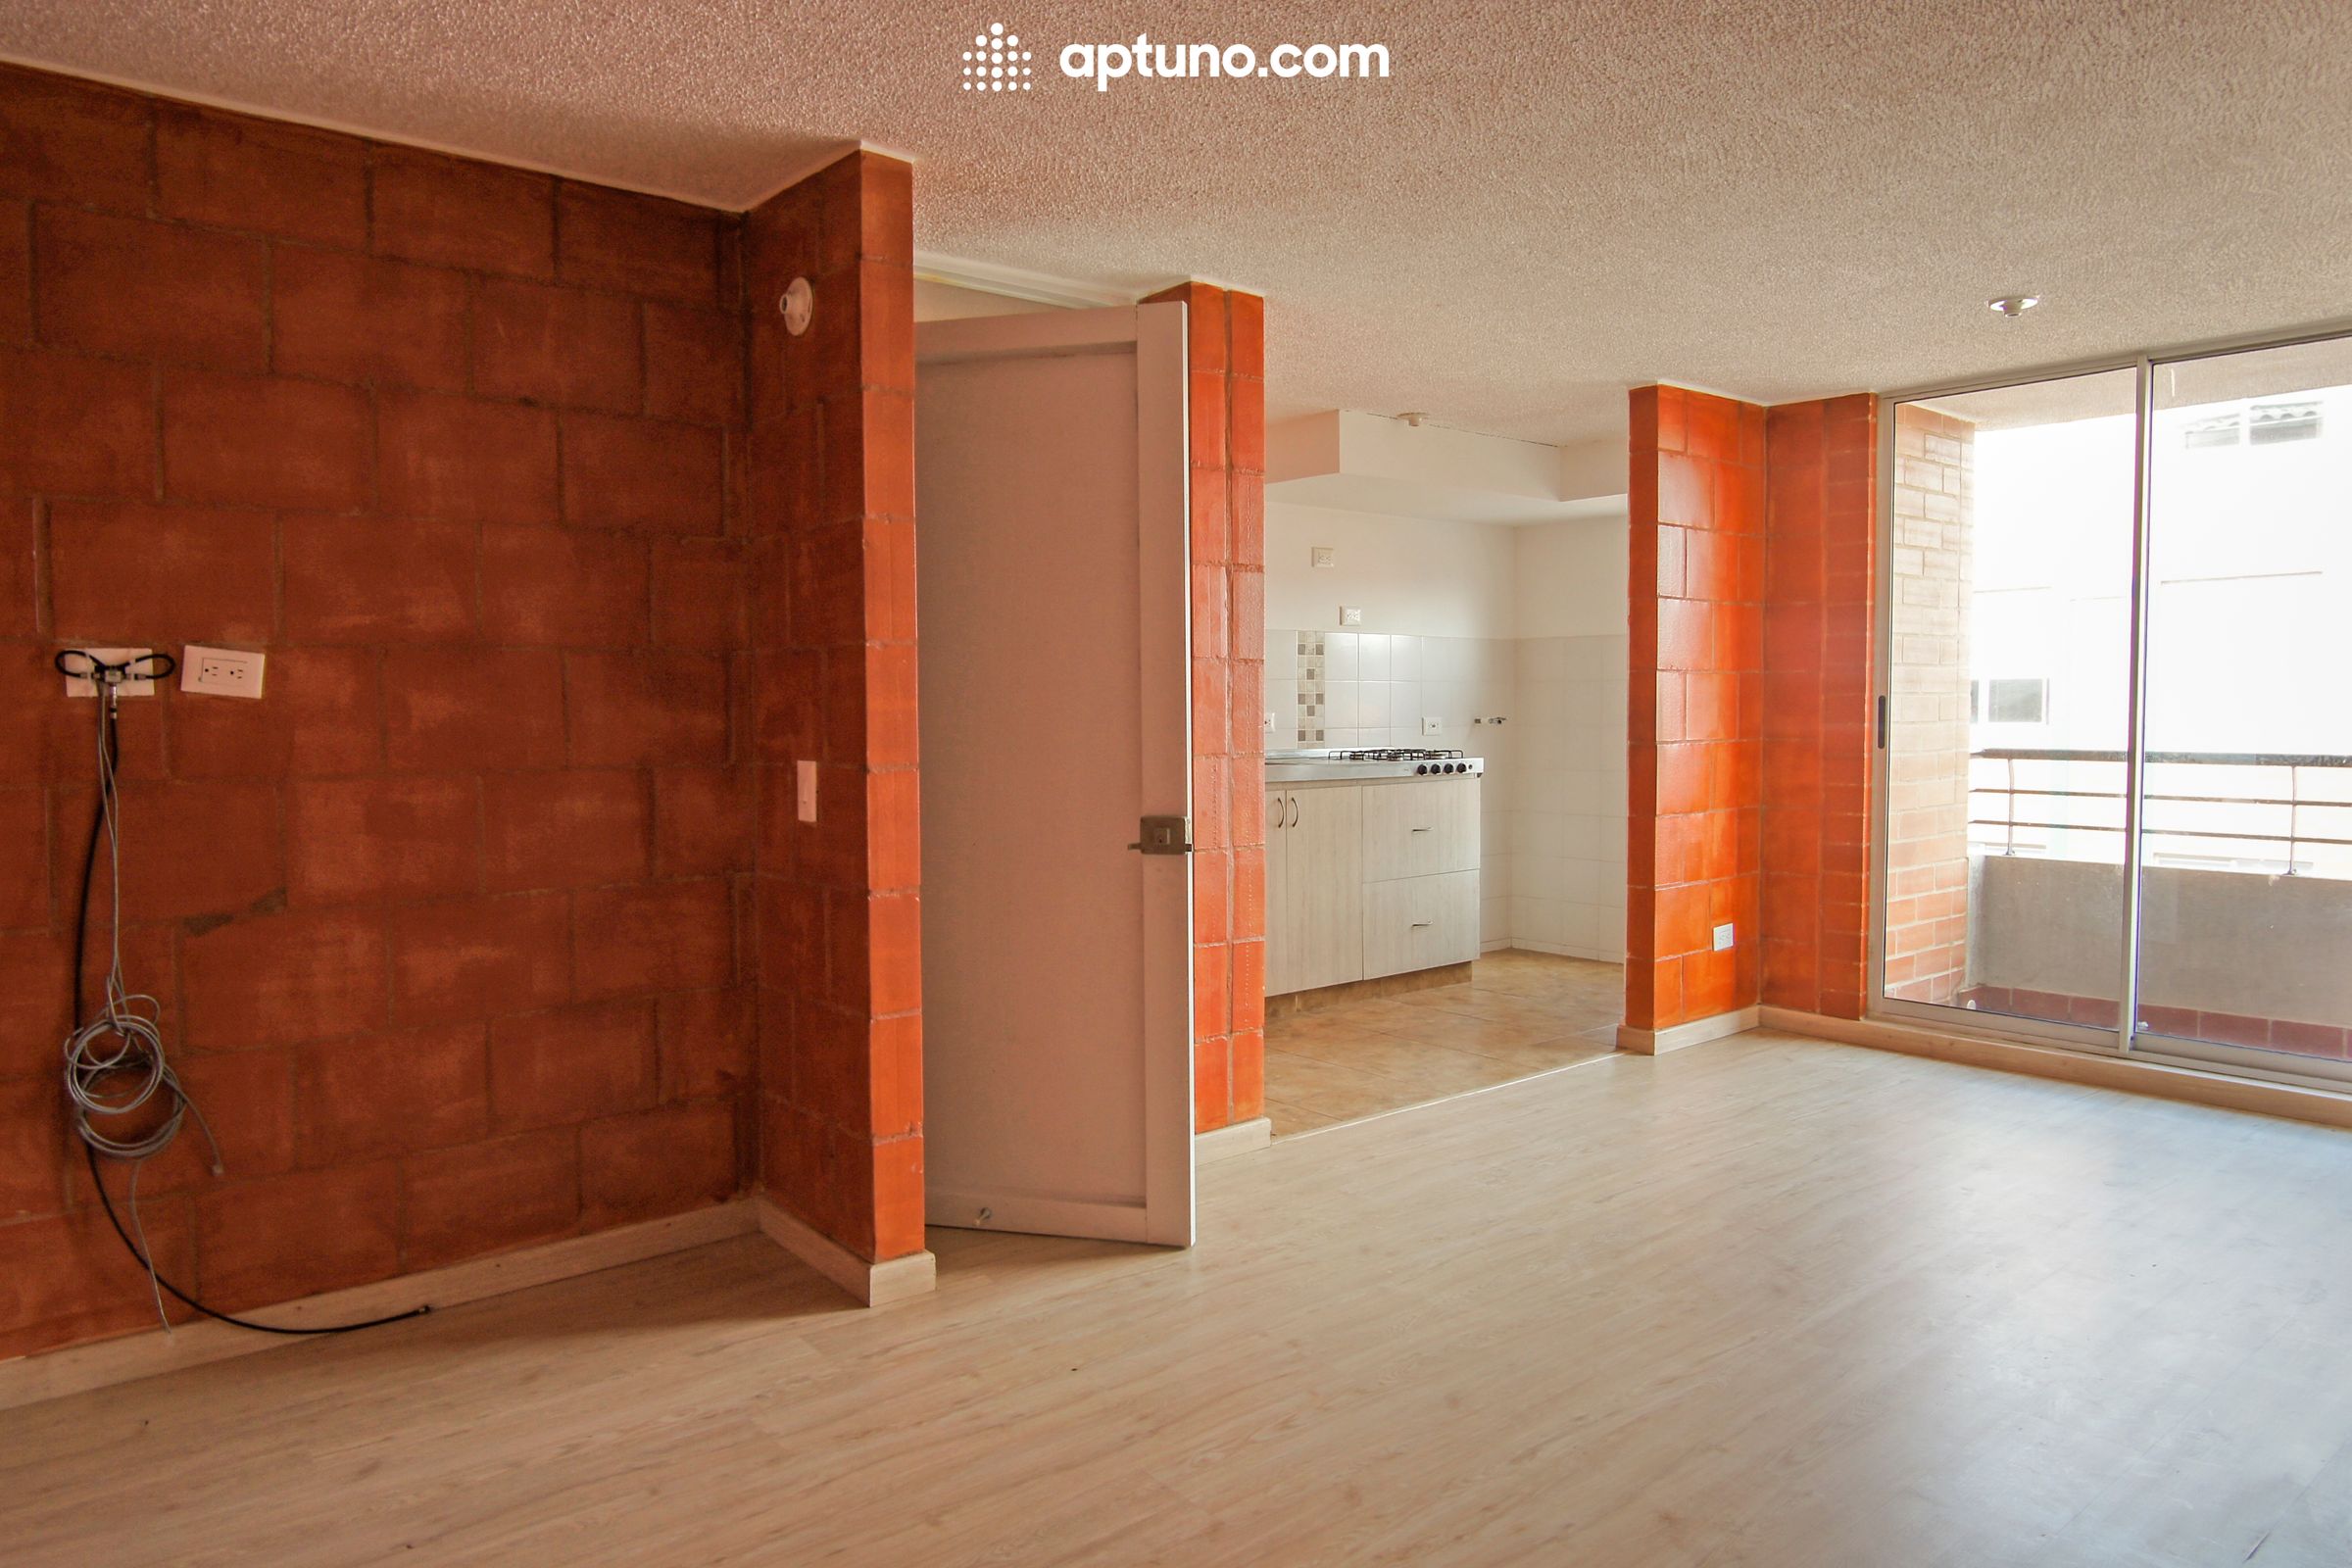 Apartamento en arriendo Tocancipá 62 m² - $ 885.000,00